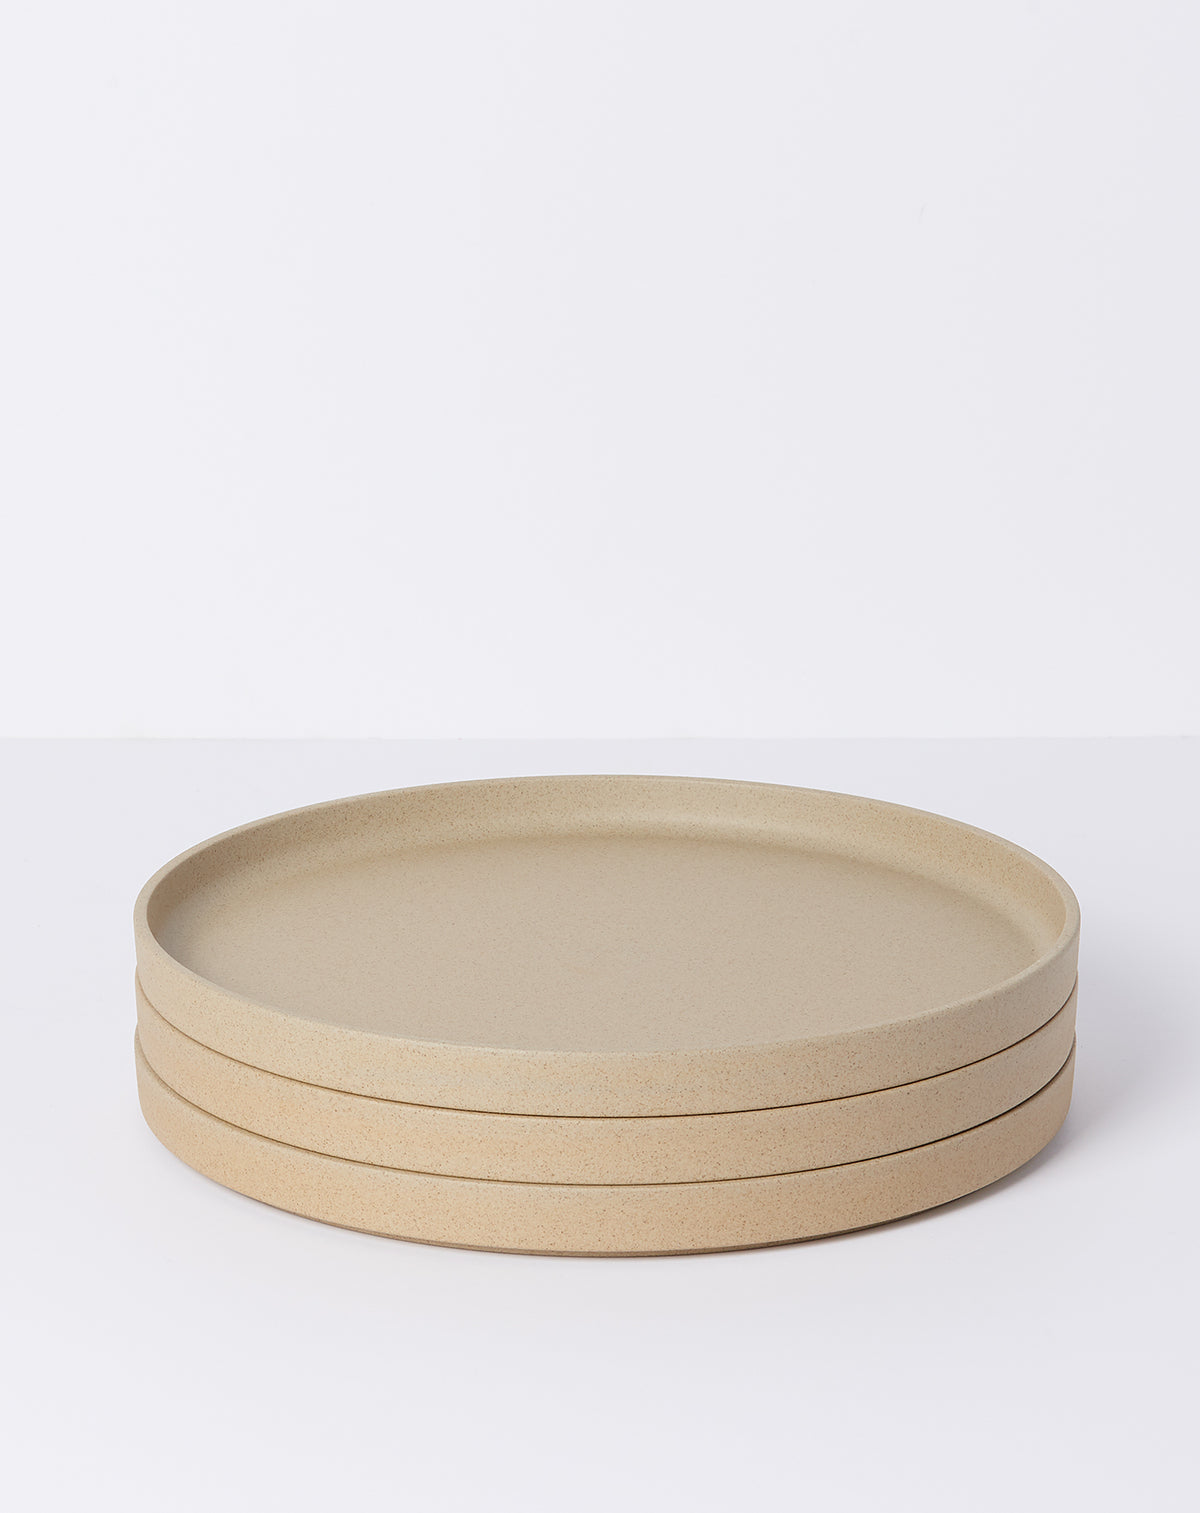 Large Plate in Natural | Hasami Porcelain | Covet + Lou | Covet + Lou